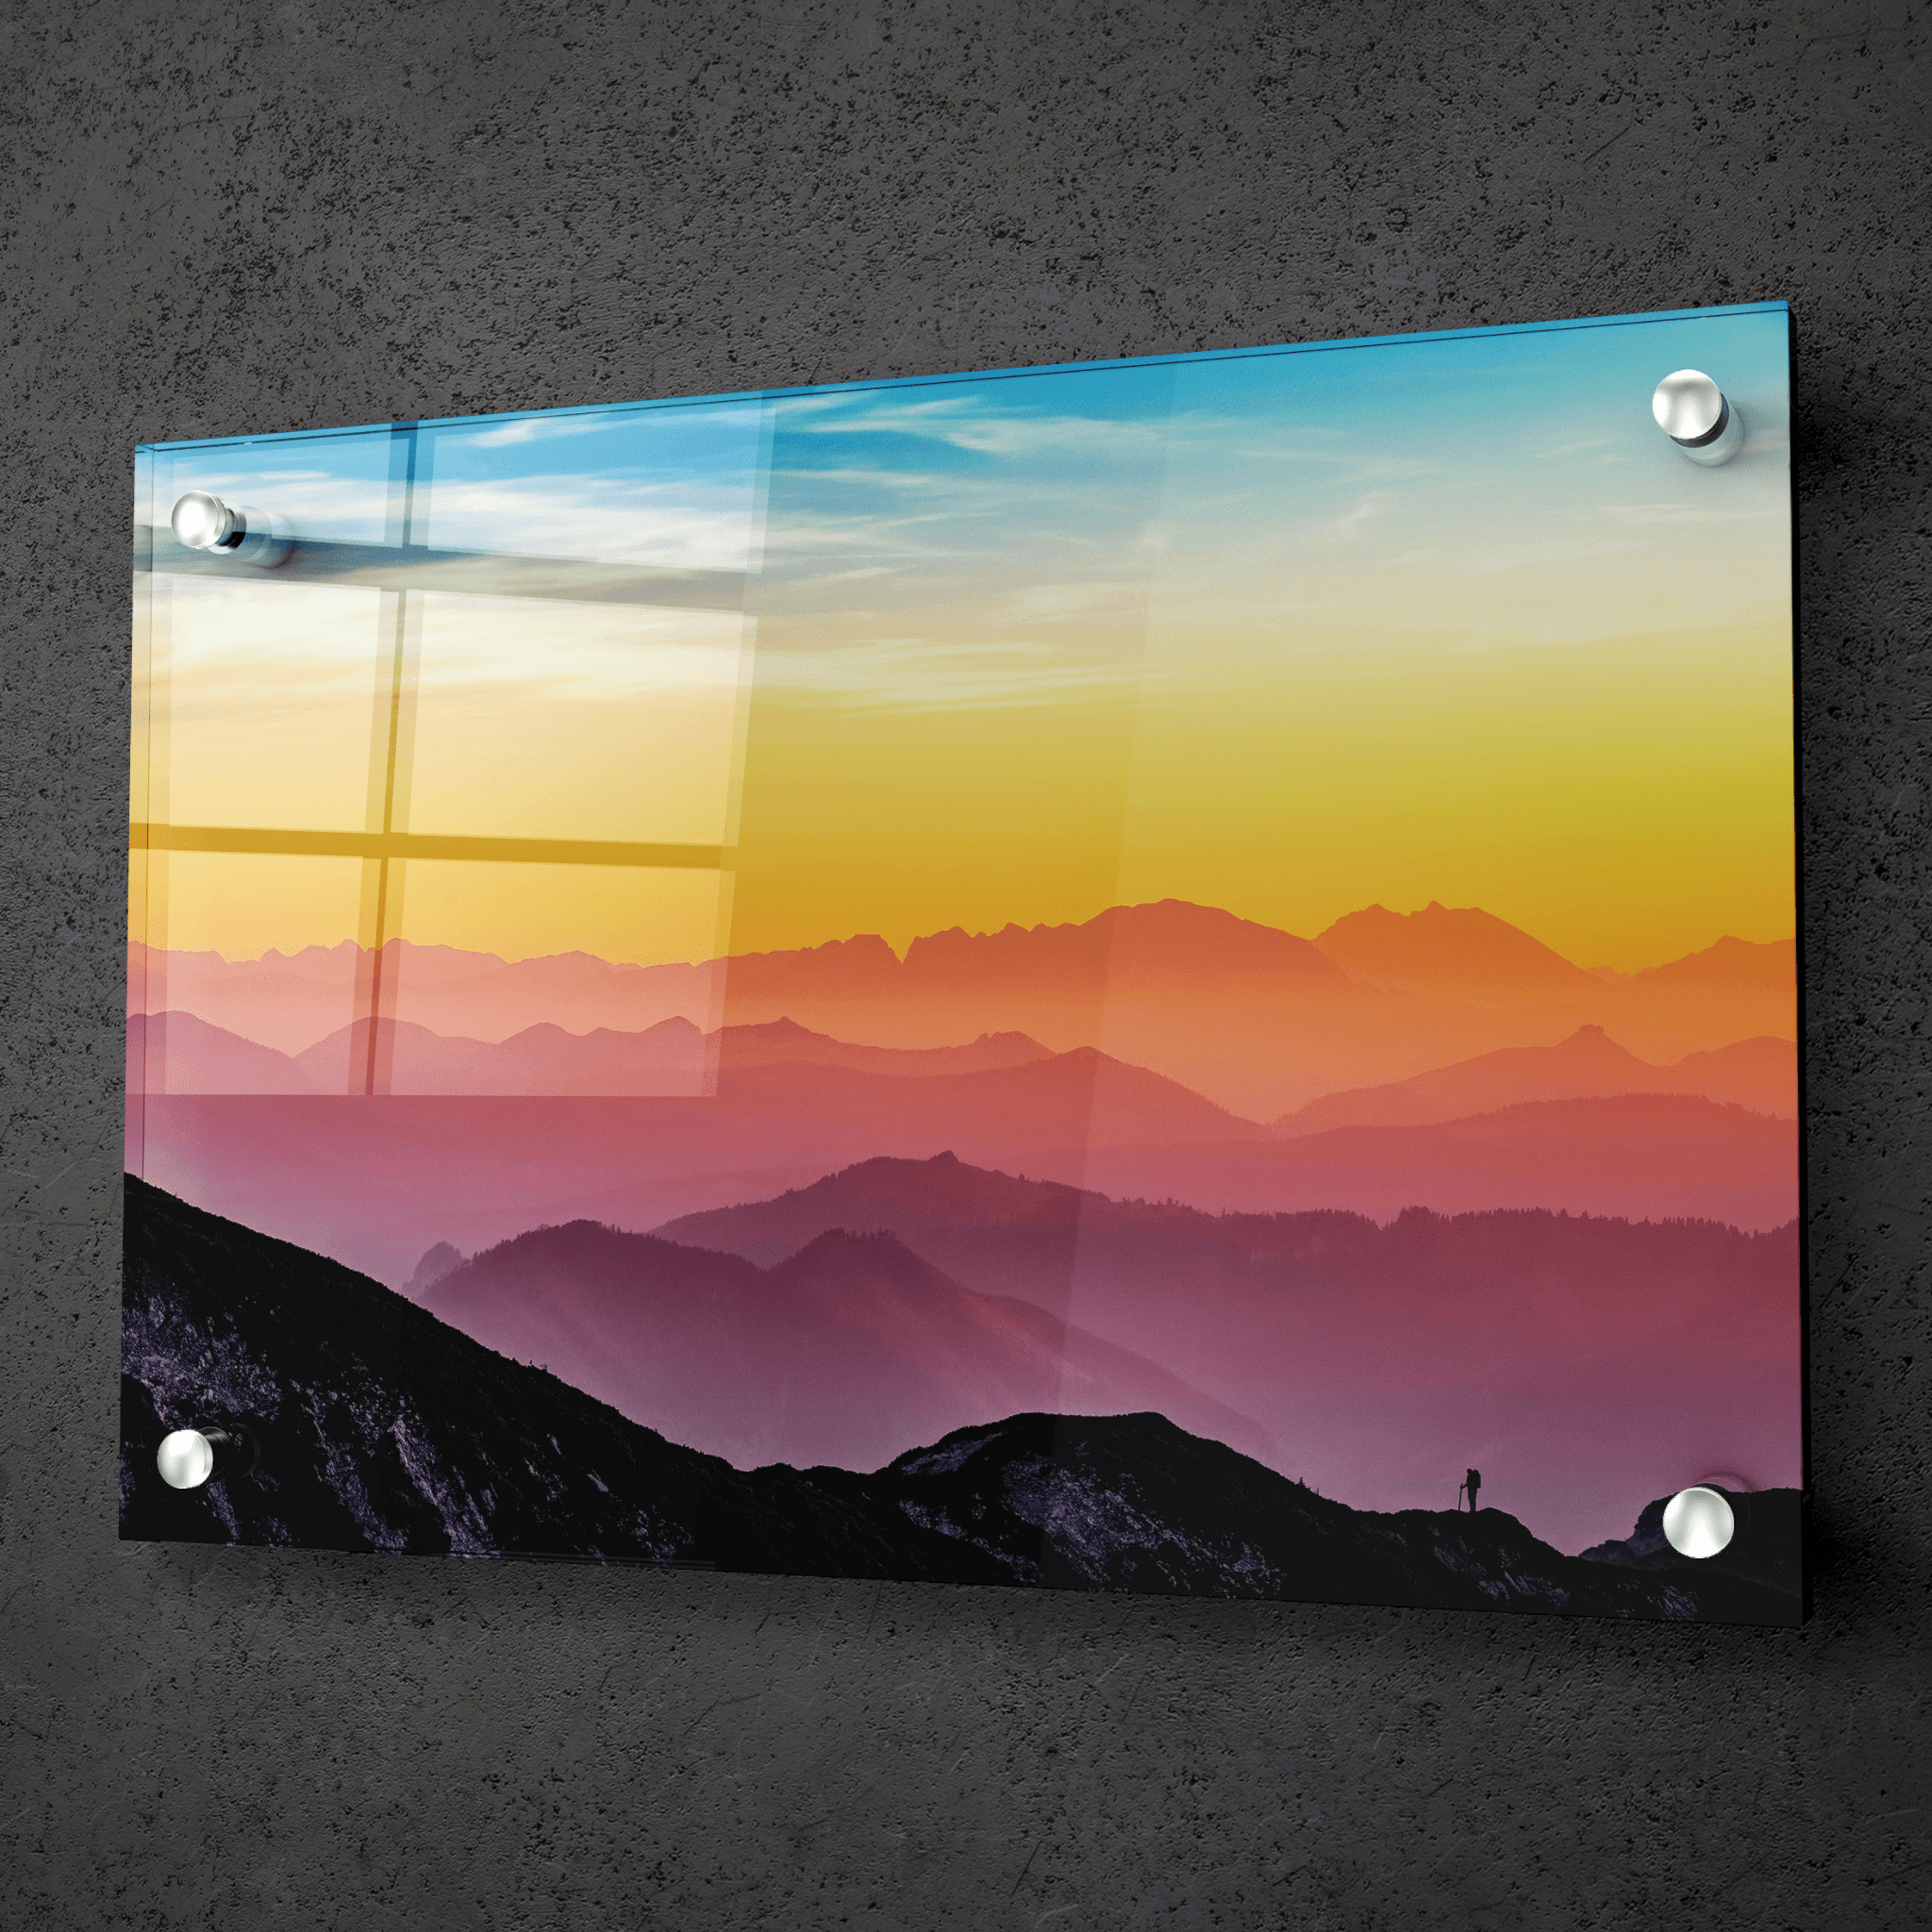 Sunset Symphony: Colorful Mountain Range Acrylic Glass Wall Art - Wallfix